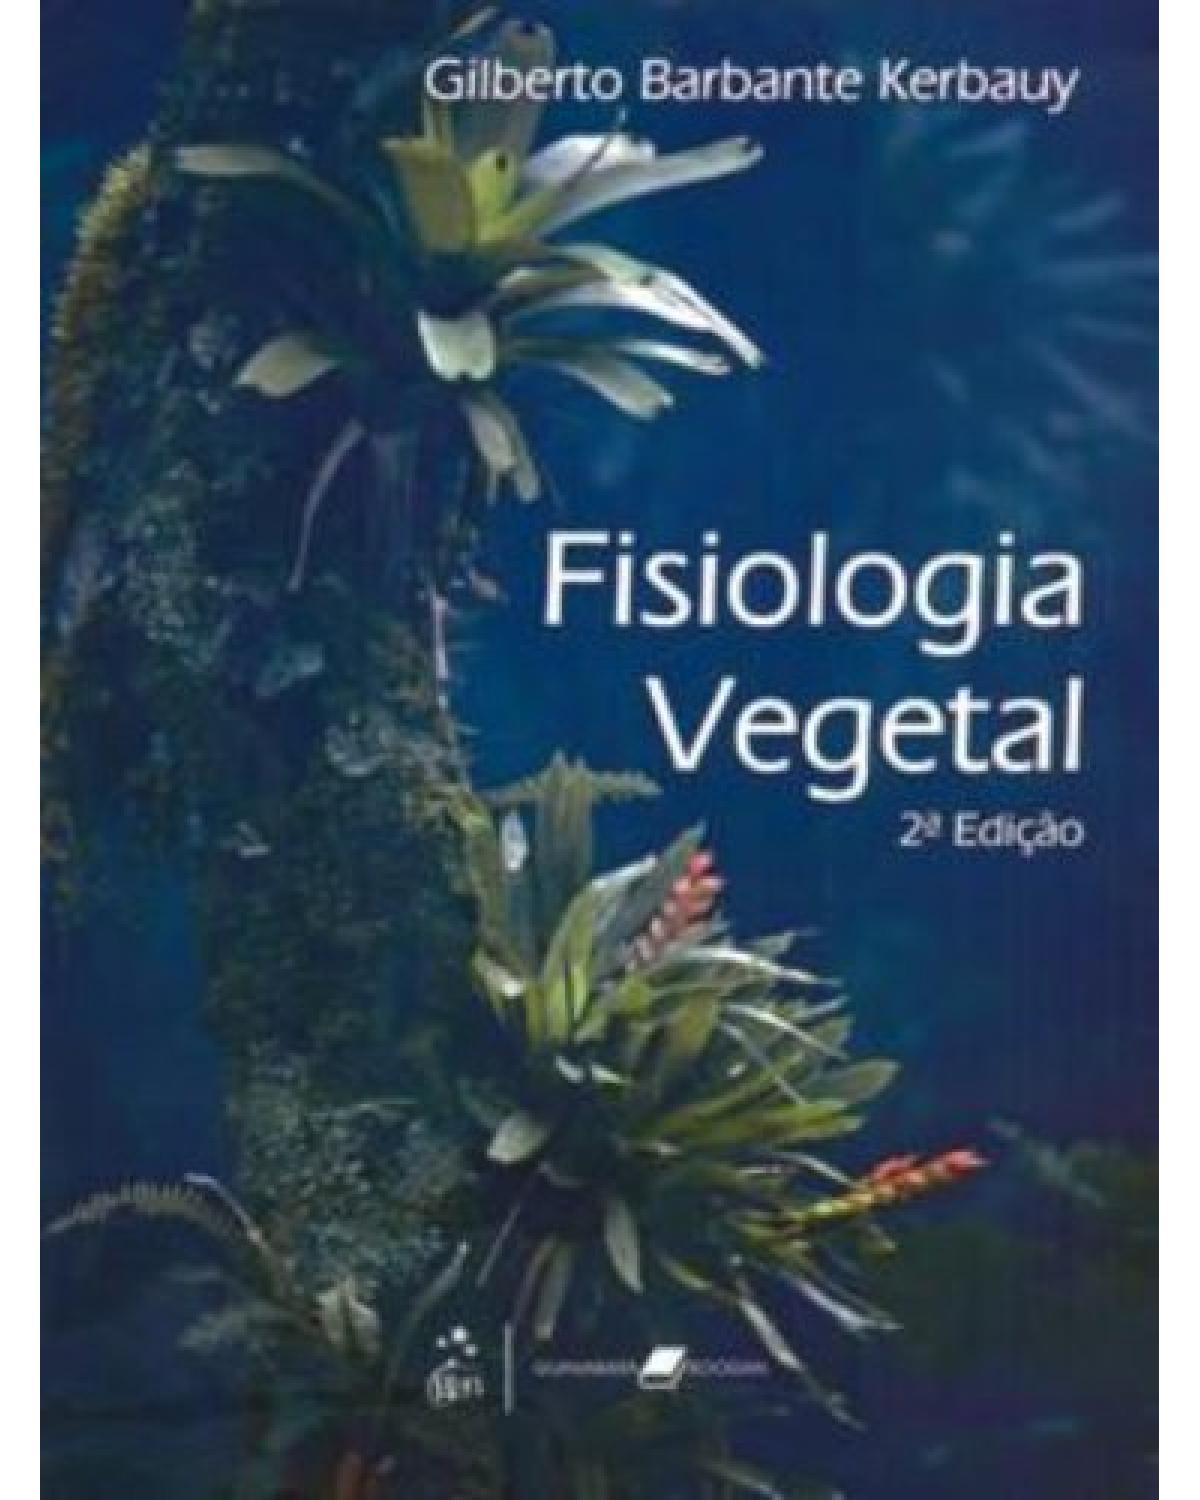 Fisiologia vegetal - 2ª Edição | 2008